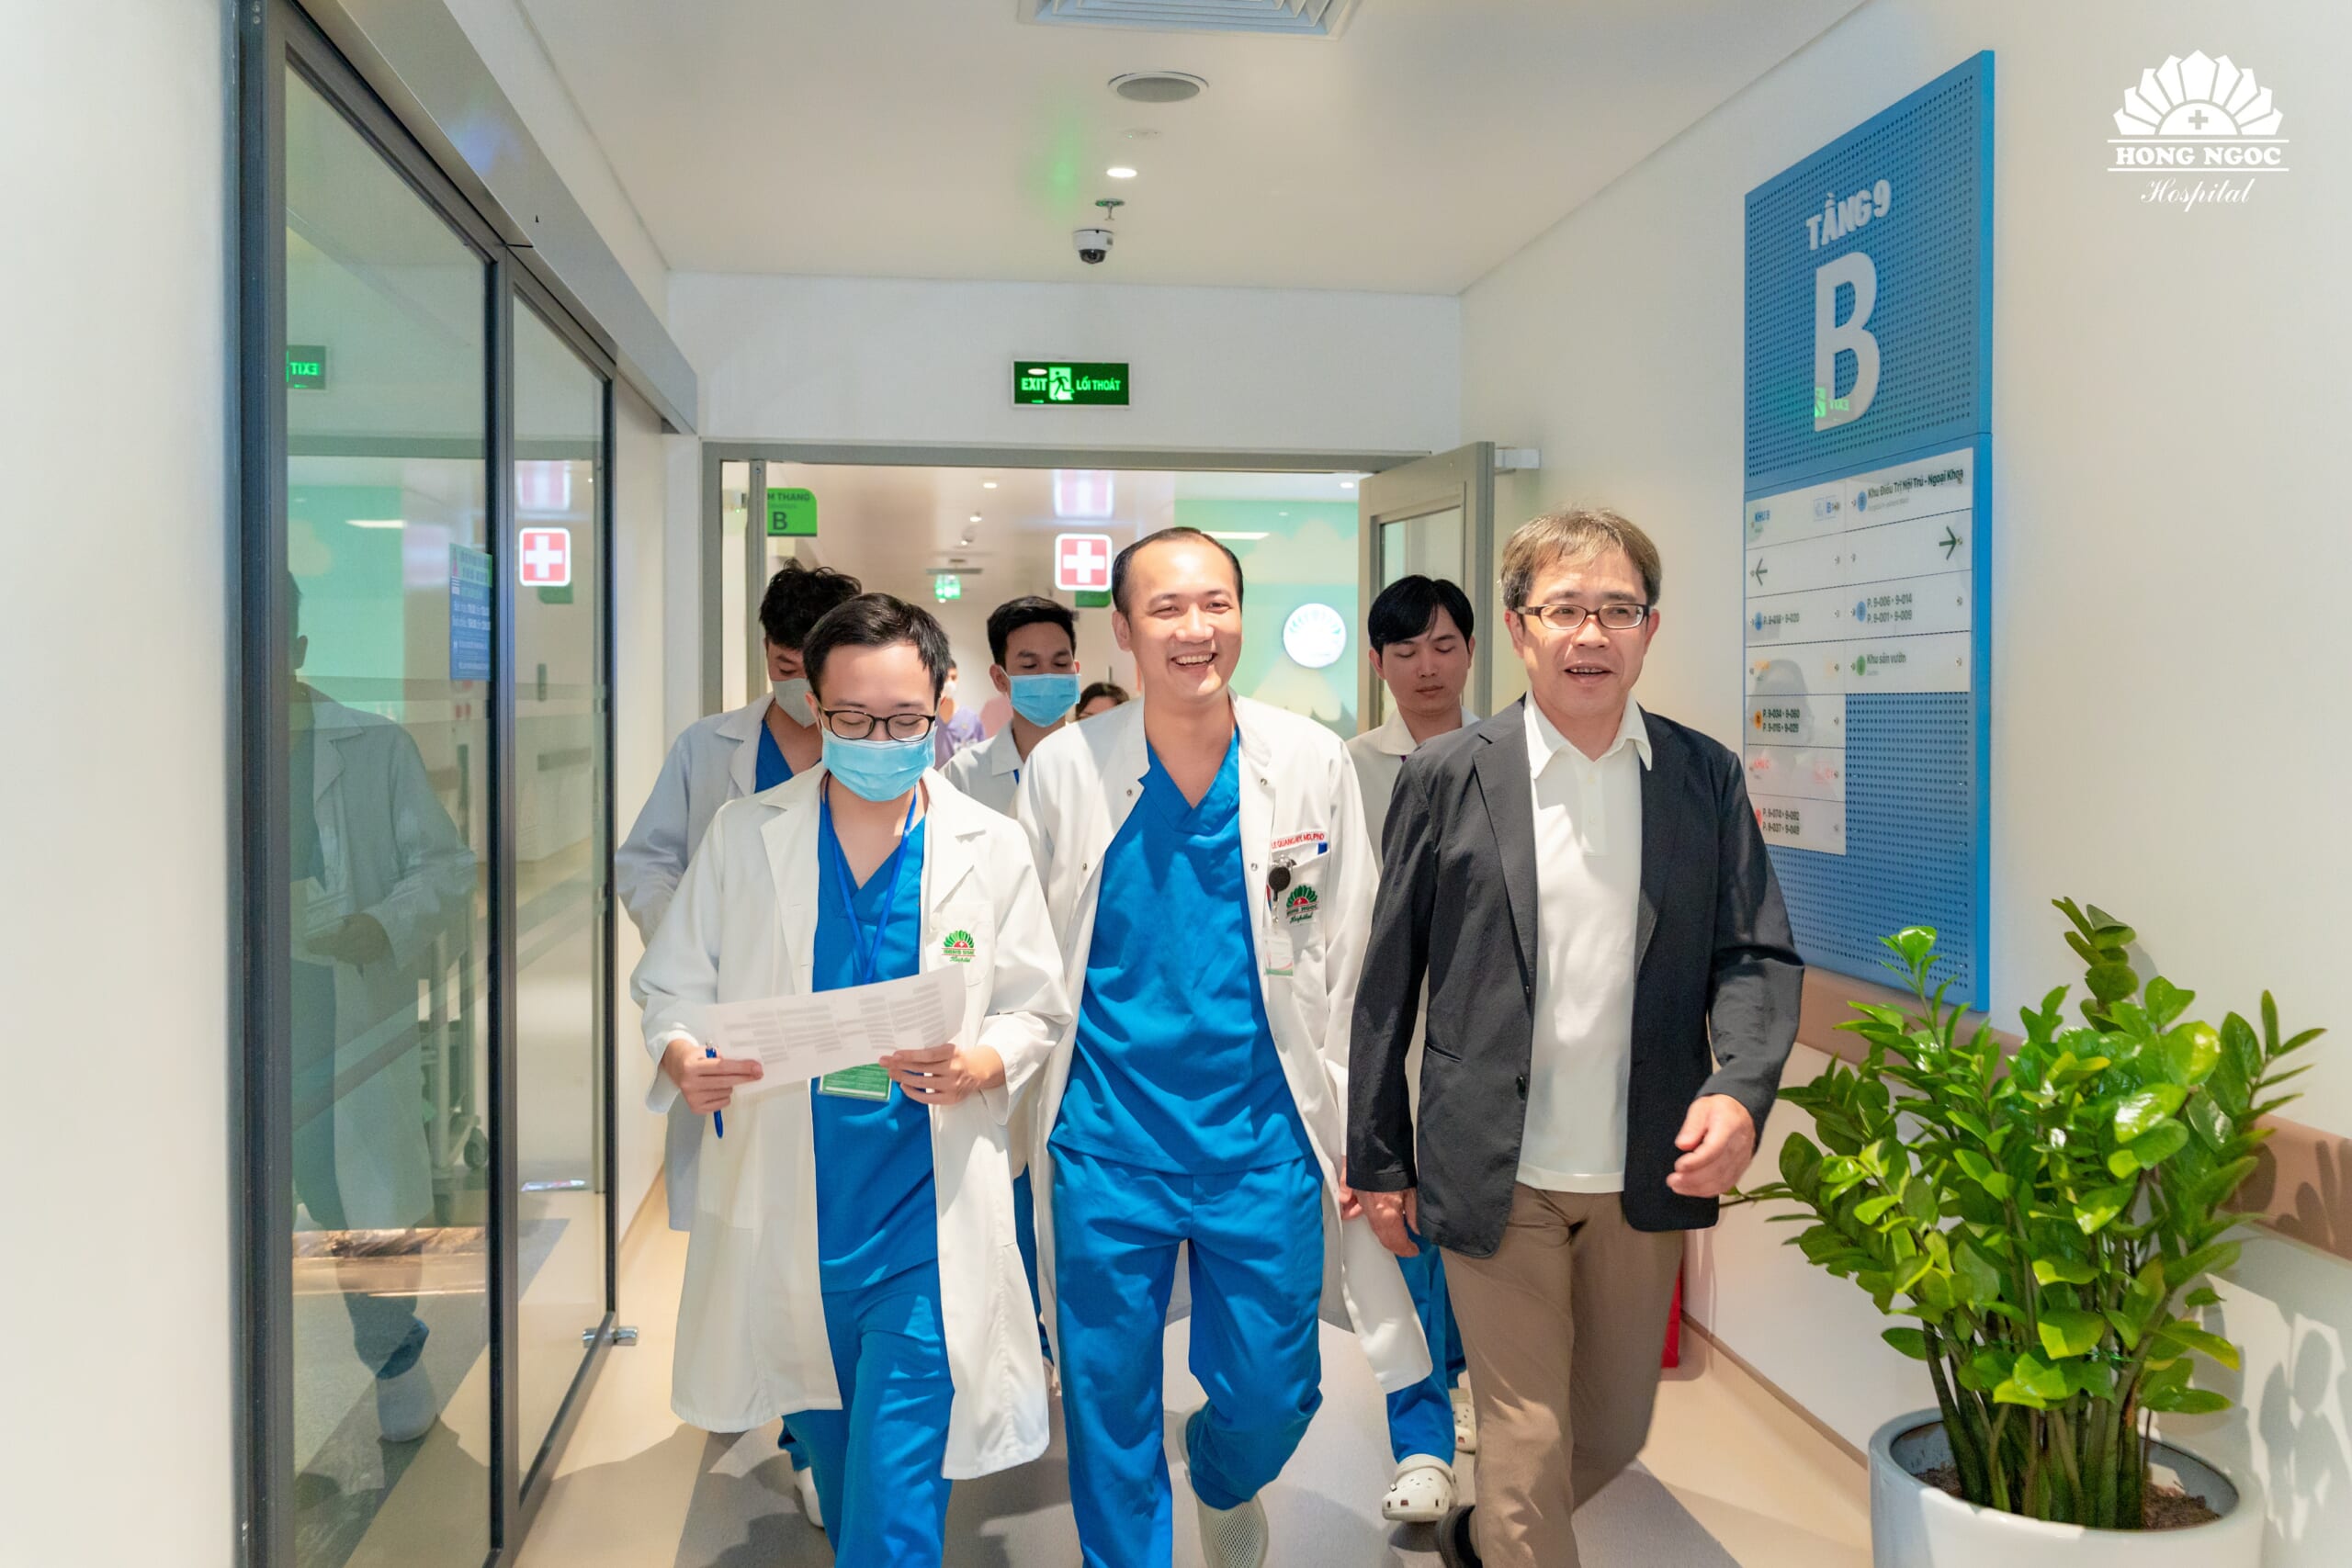 ホンゴック総合病院は日本人教授と協力し、腱切除術を必要としない膝関節置換術をベトナムに導入